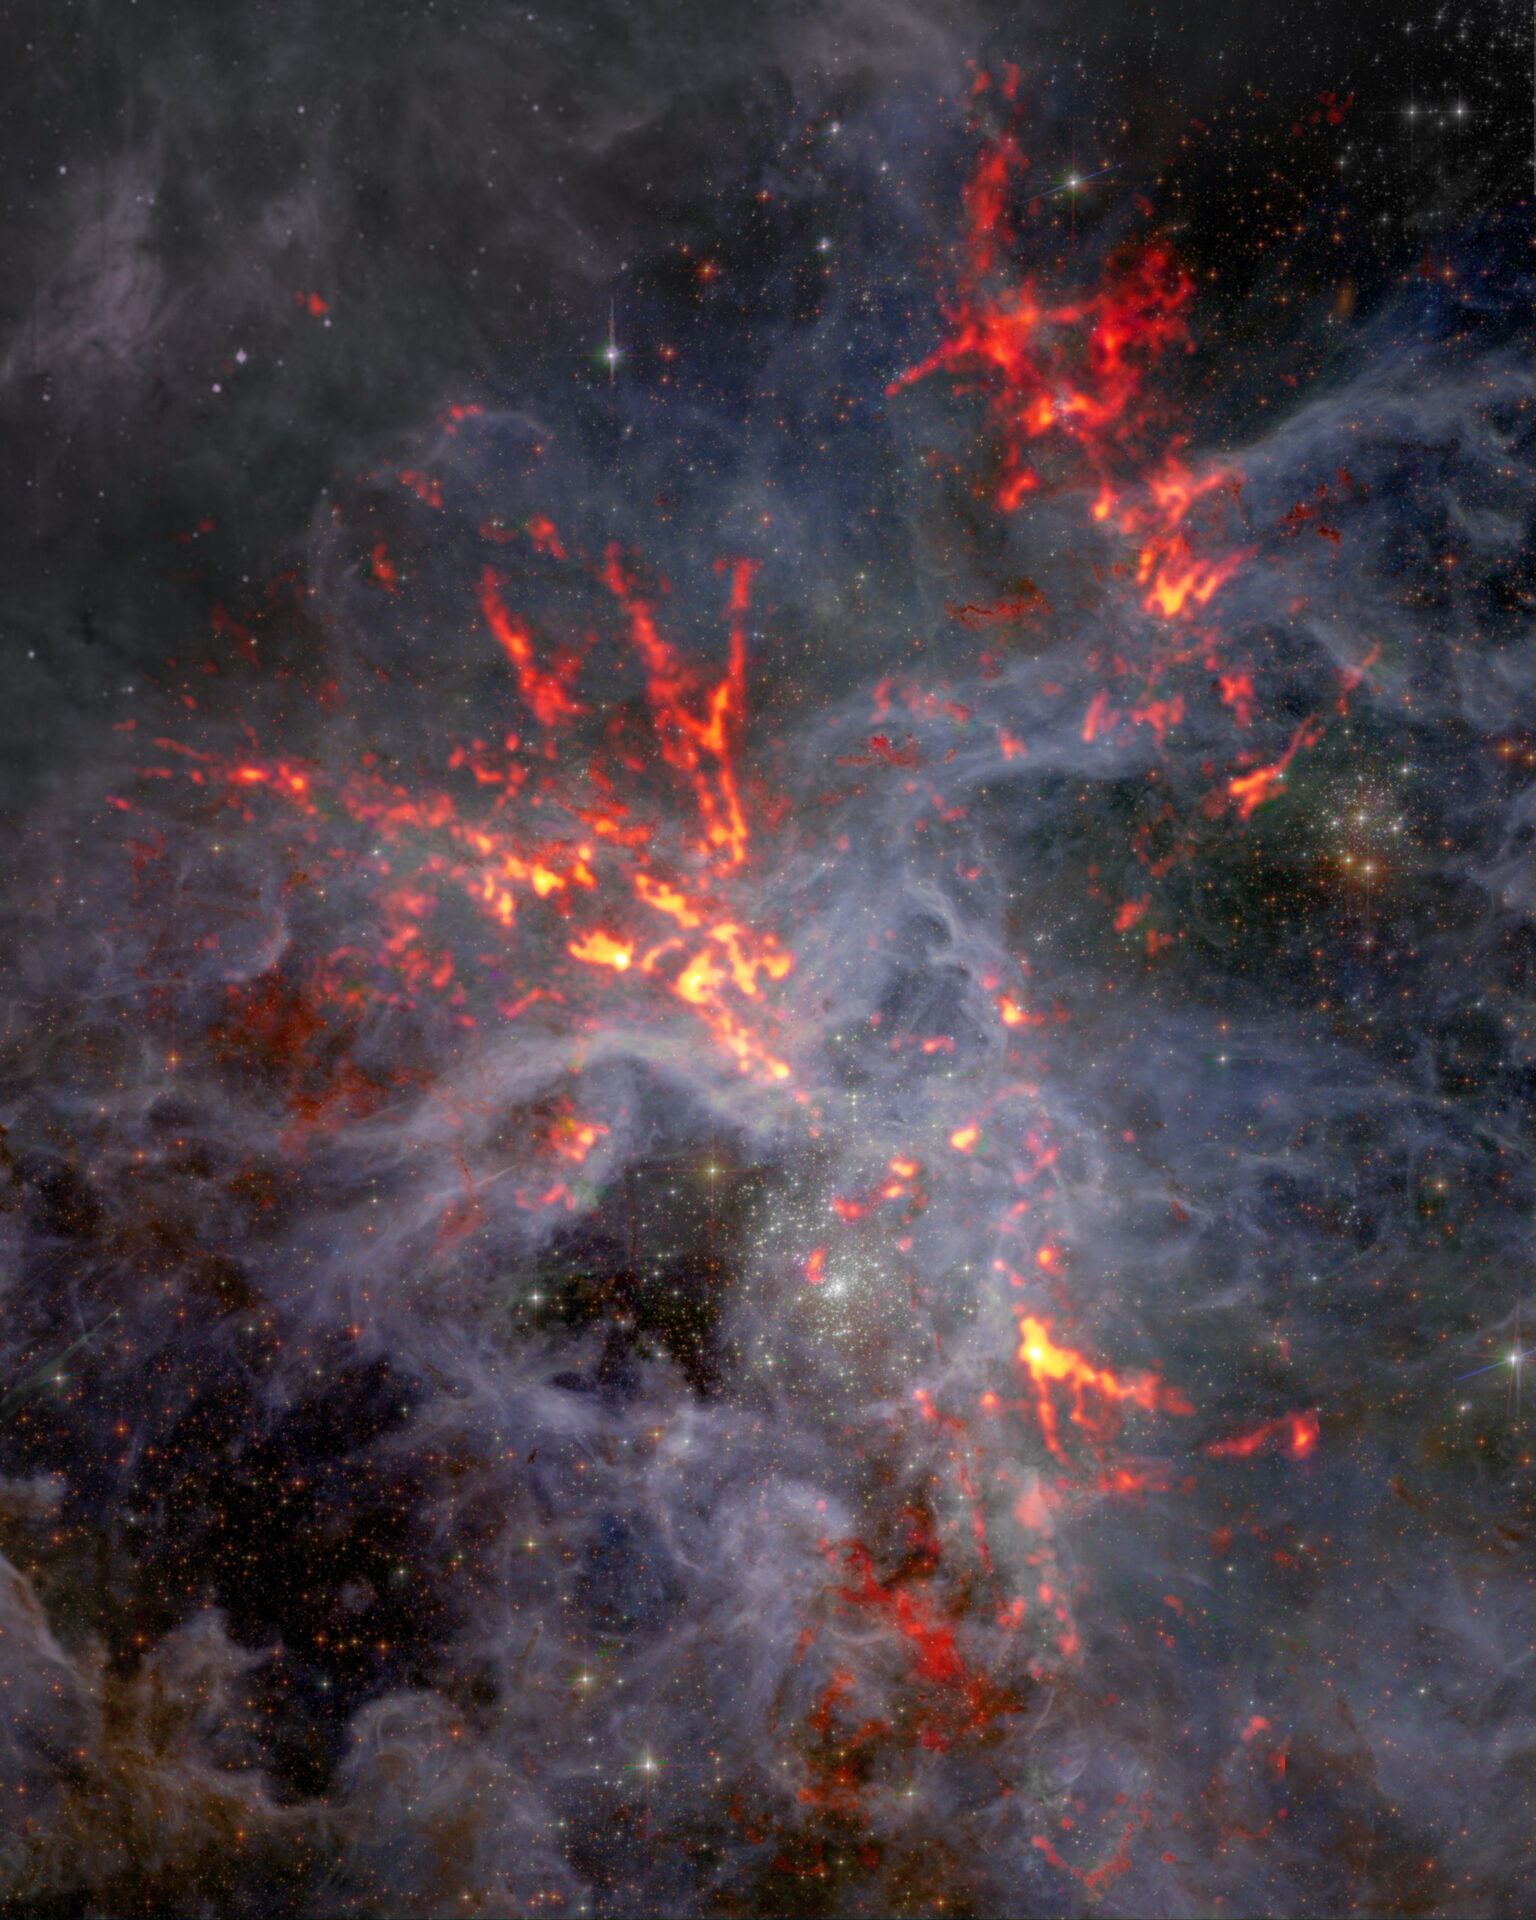 Composite image of 30 Doradus in the Large Magellanic Cloud